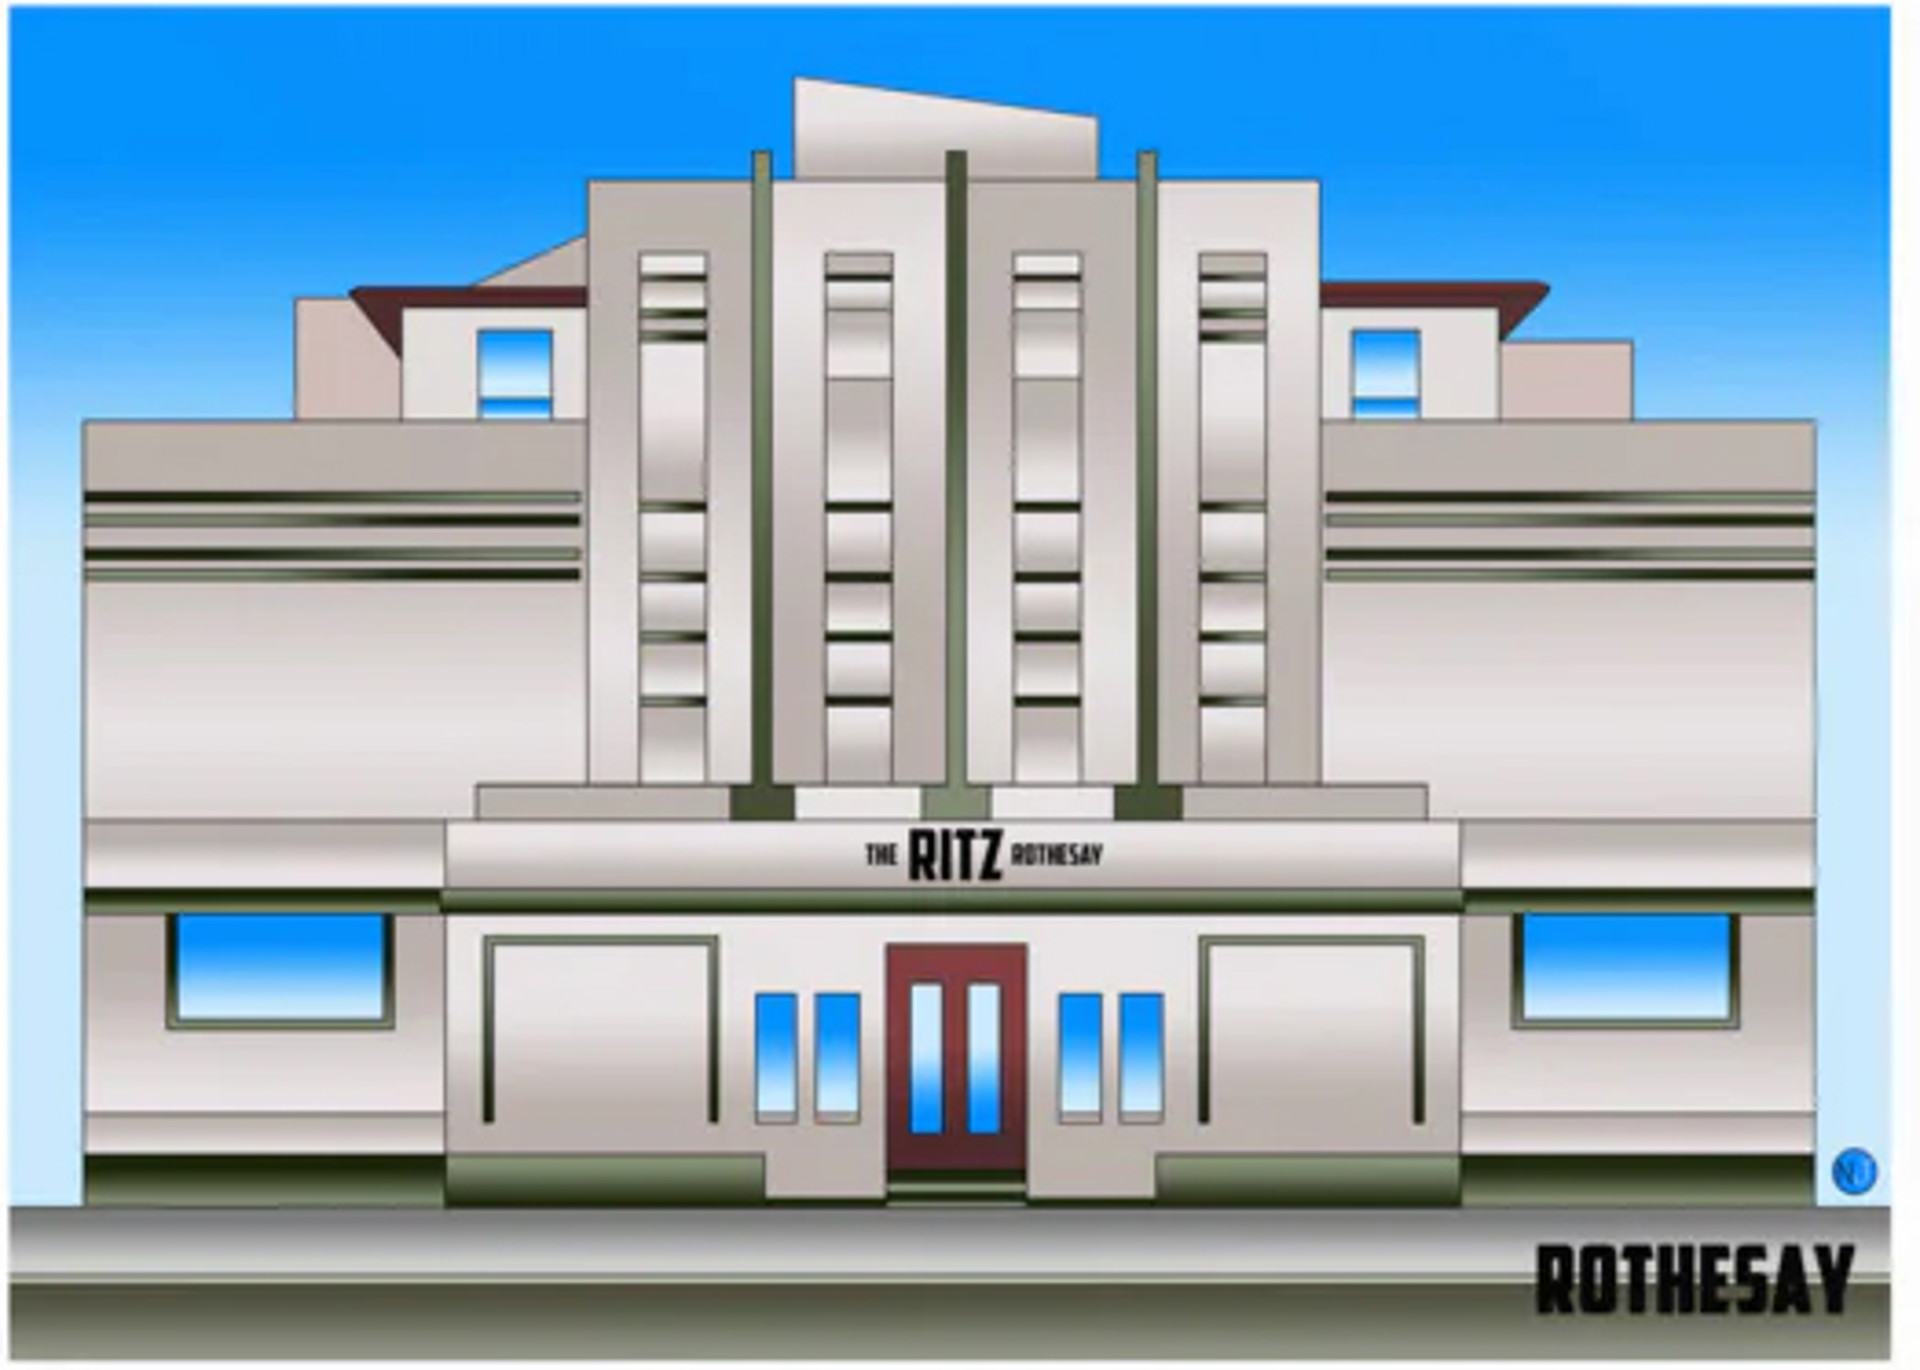 Background image - Ritz